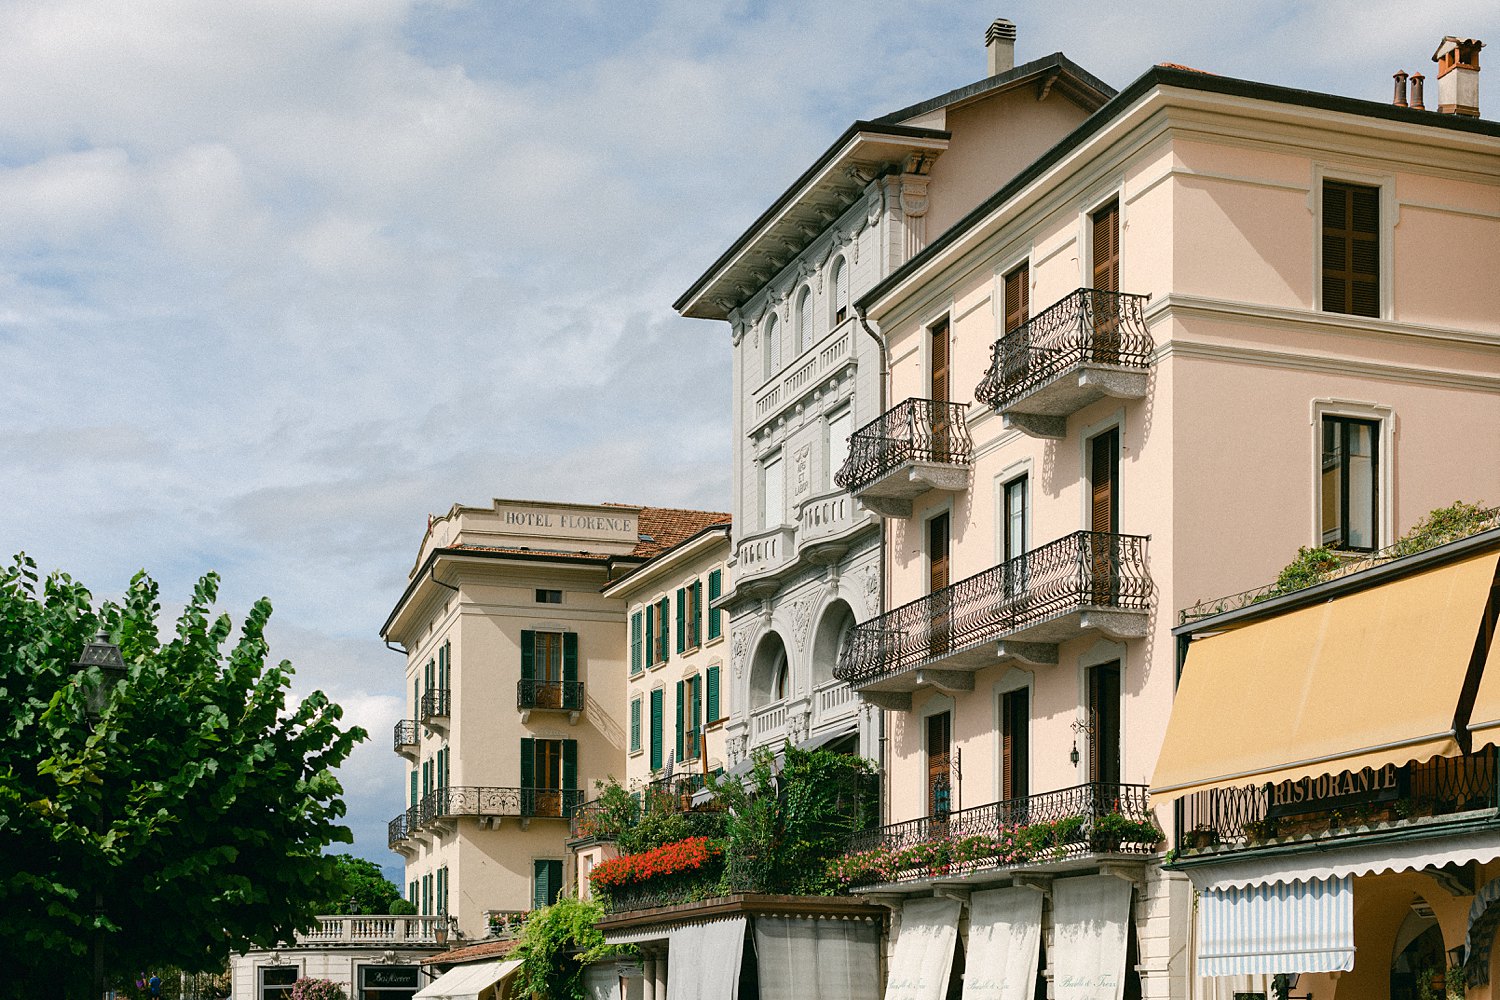 Italian building facades in Bellagio Italy